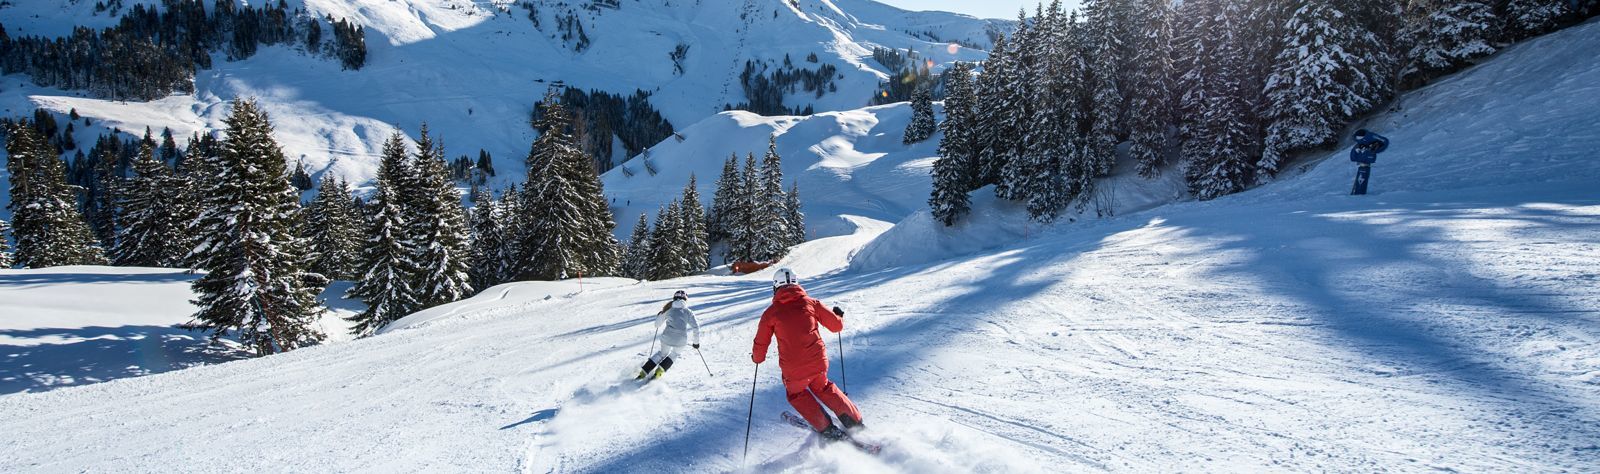 Kitzbühel ski holidays